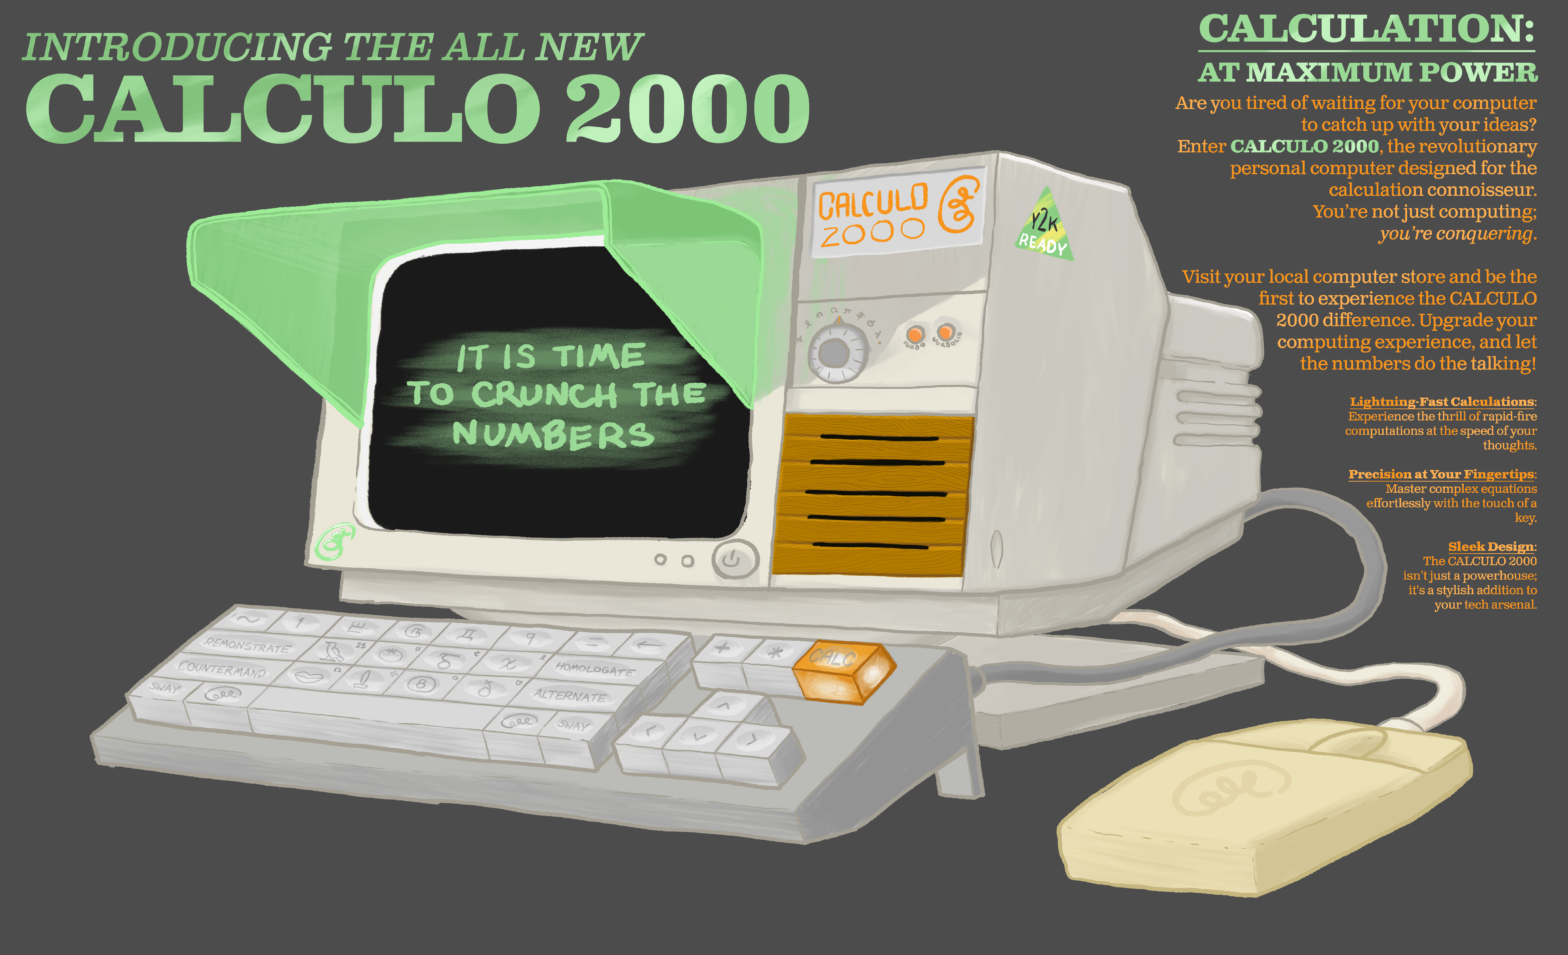 The Calculo 2000